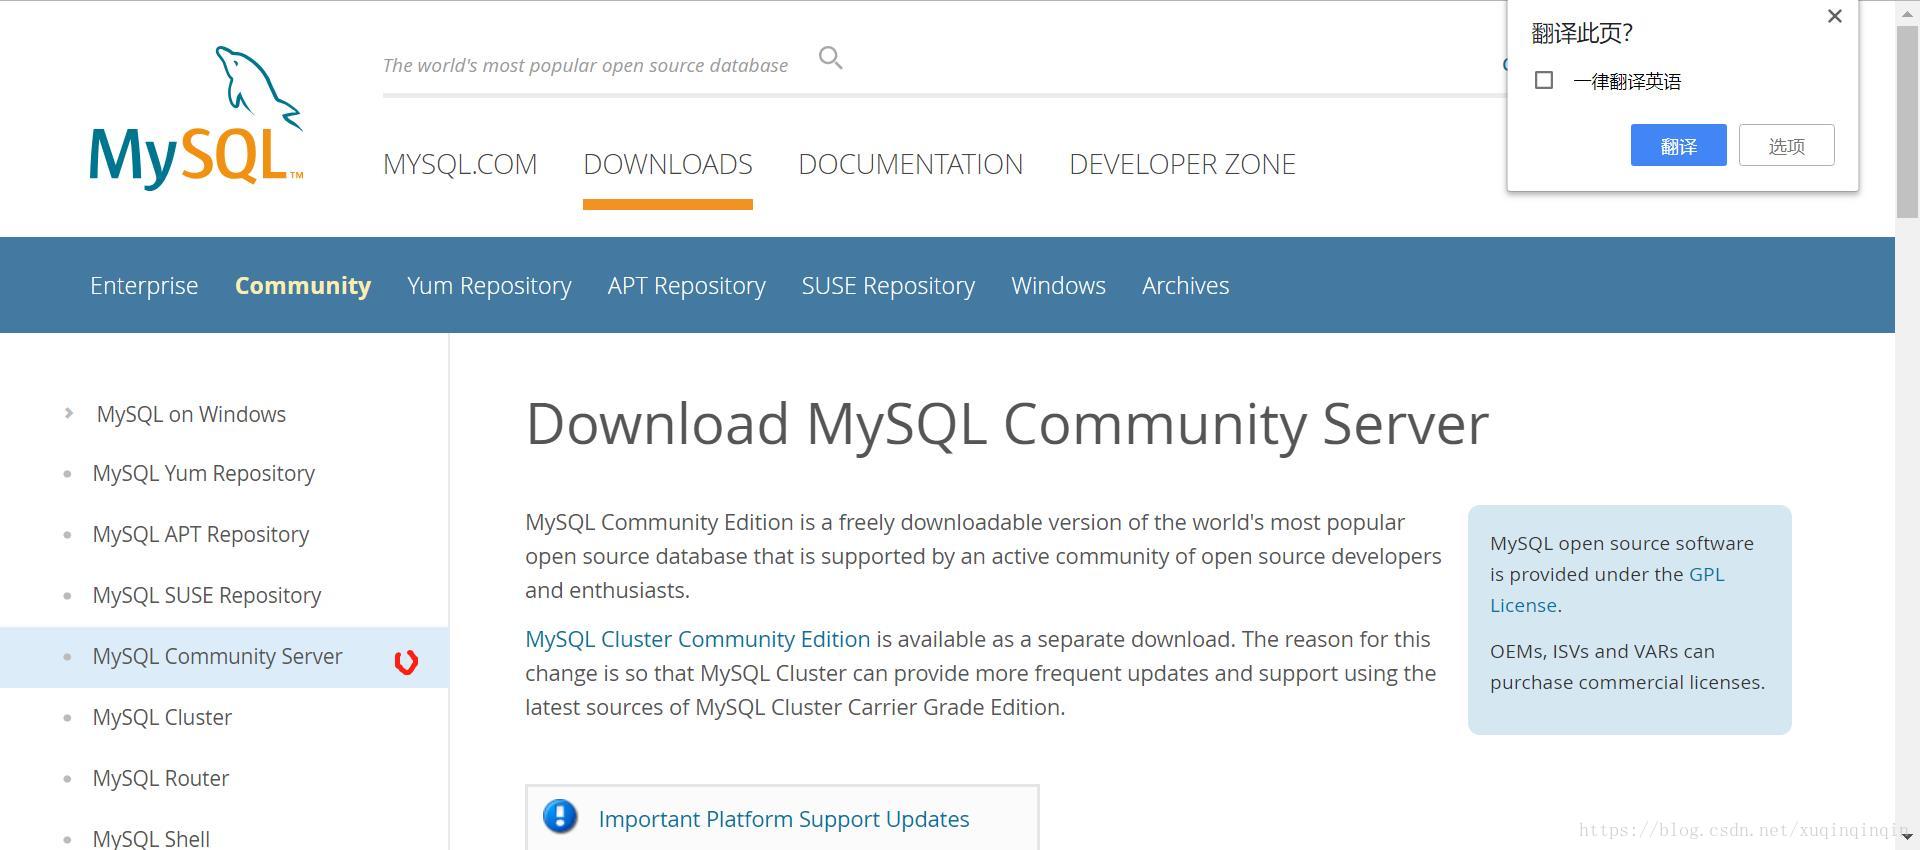 Import platform. MYSQL download. MYSQL. MYSQL Shell. MYSQL Shell 8.0.32.